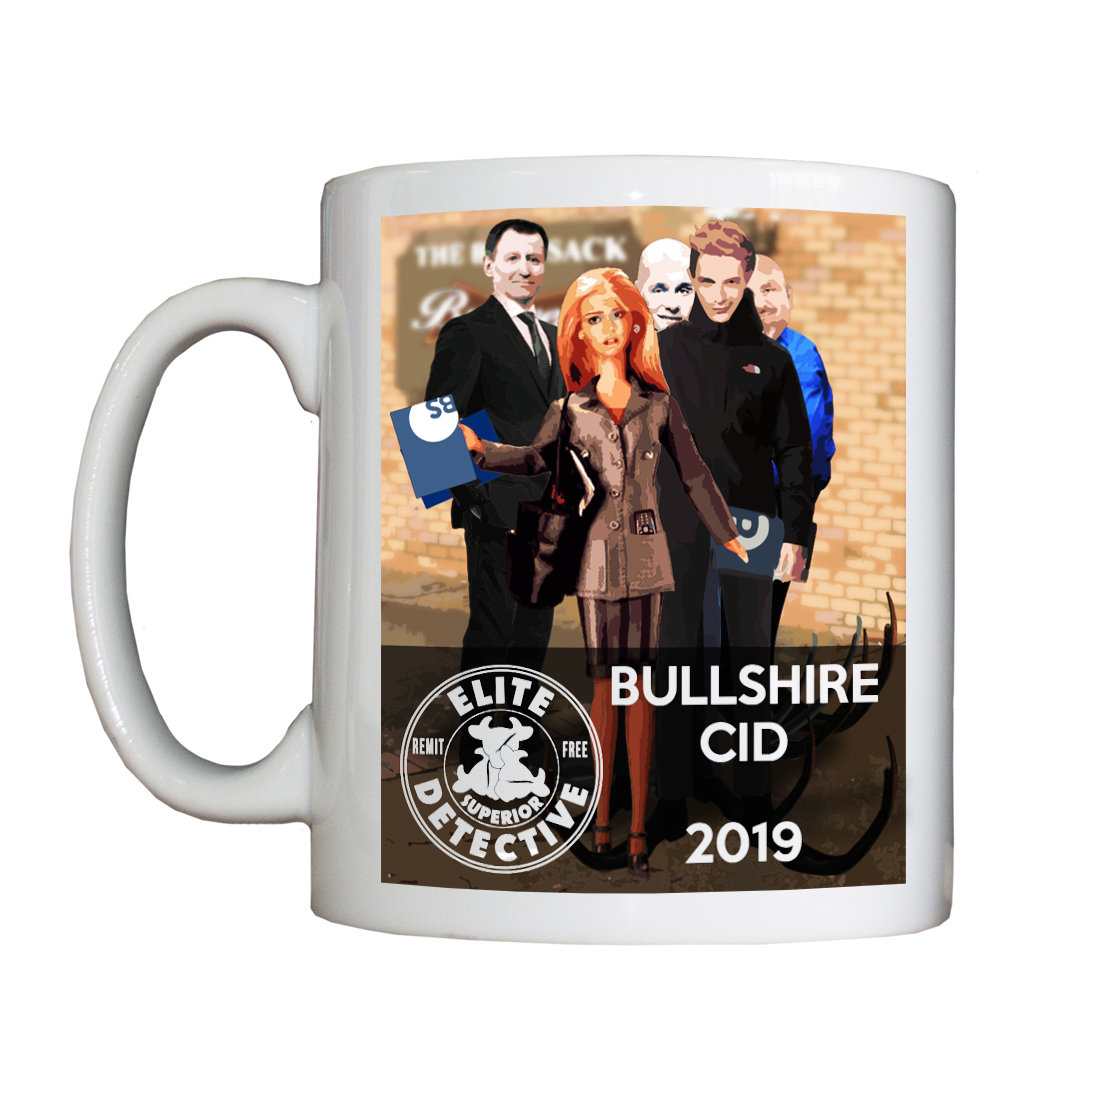 Personalised 'Bullshire CID 2019' Drinking Vessel